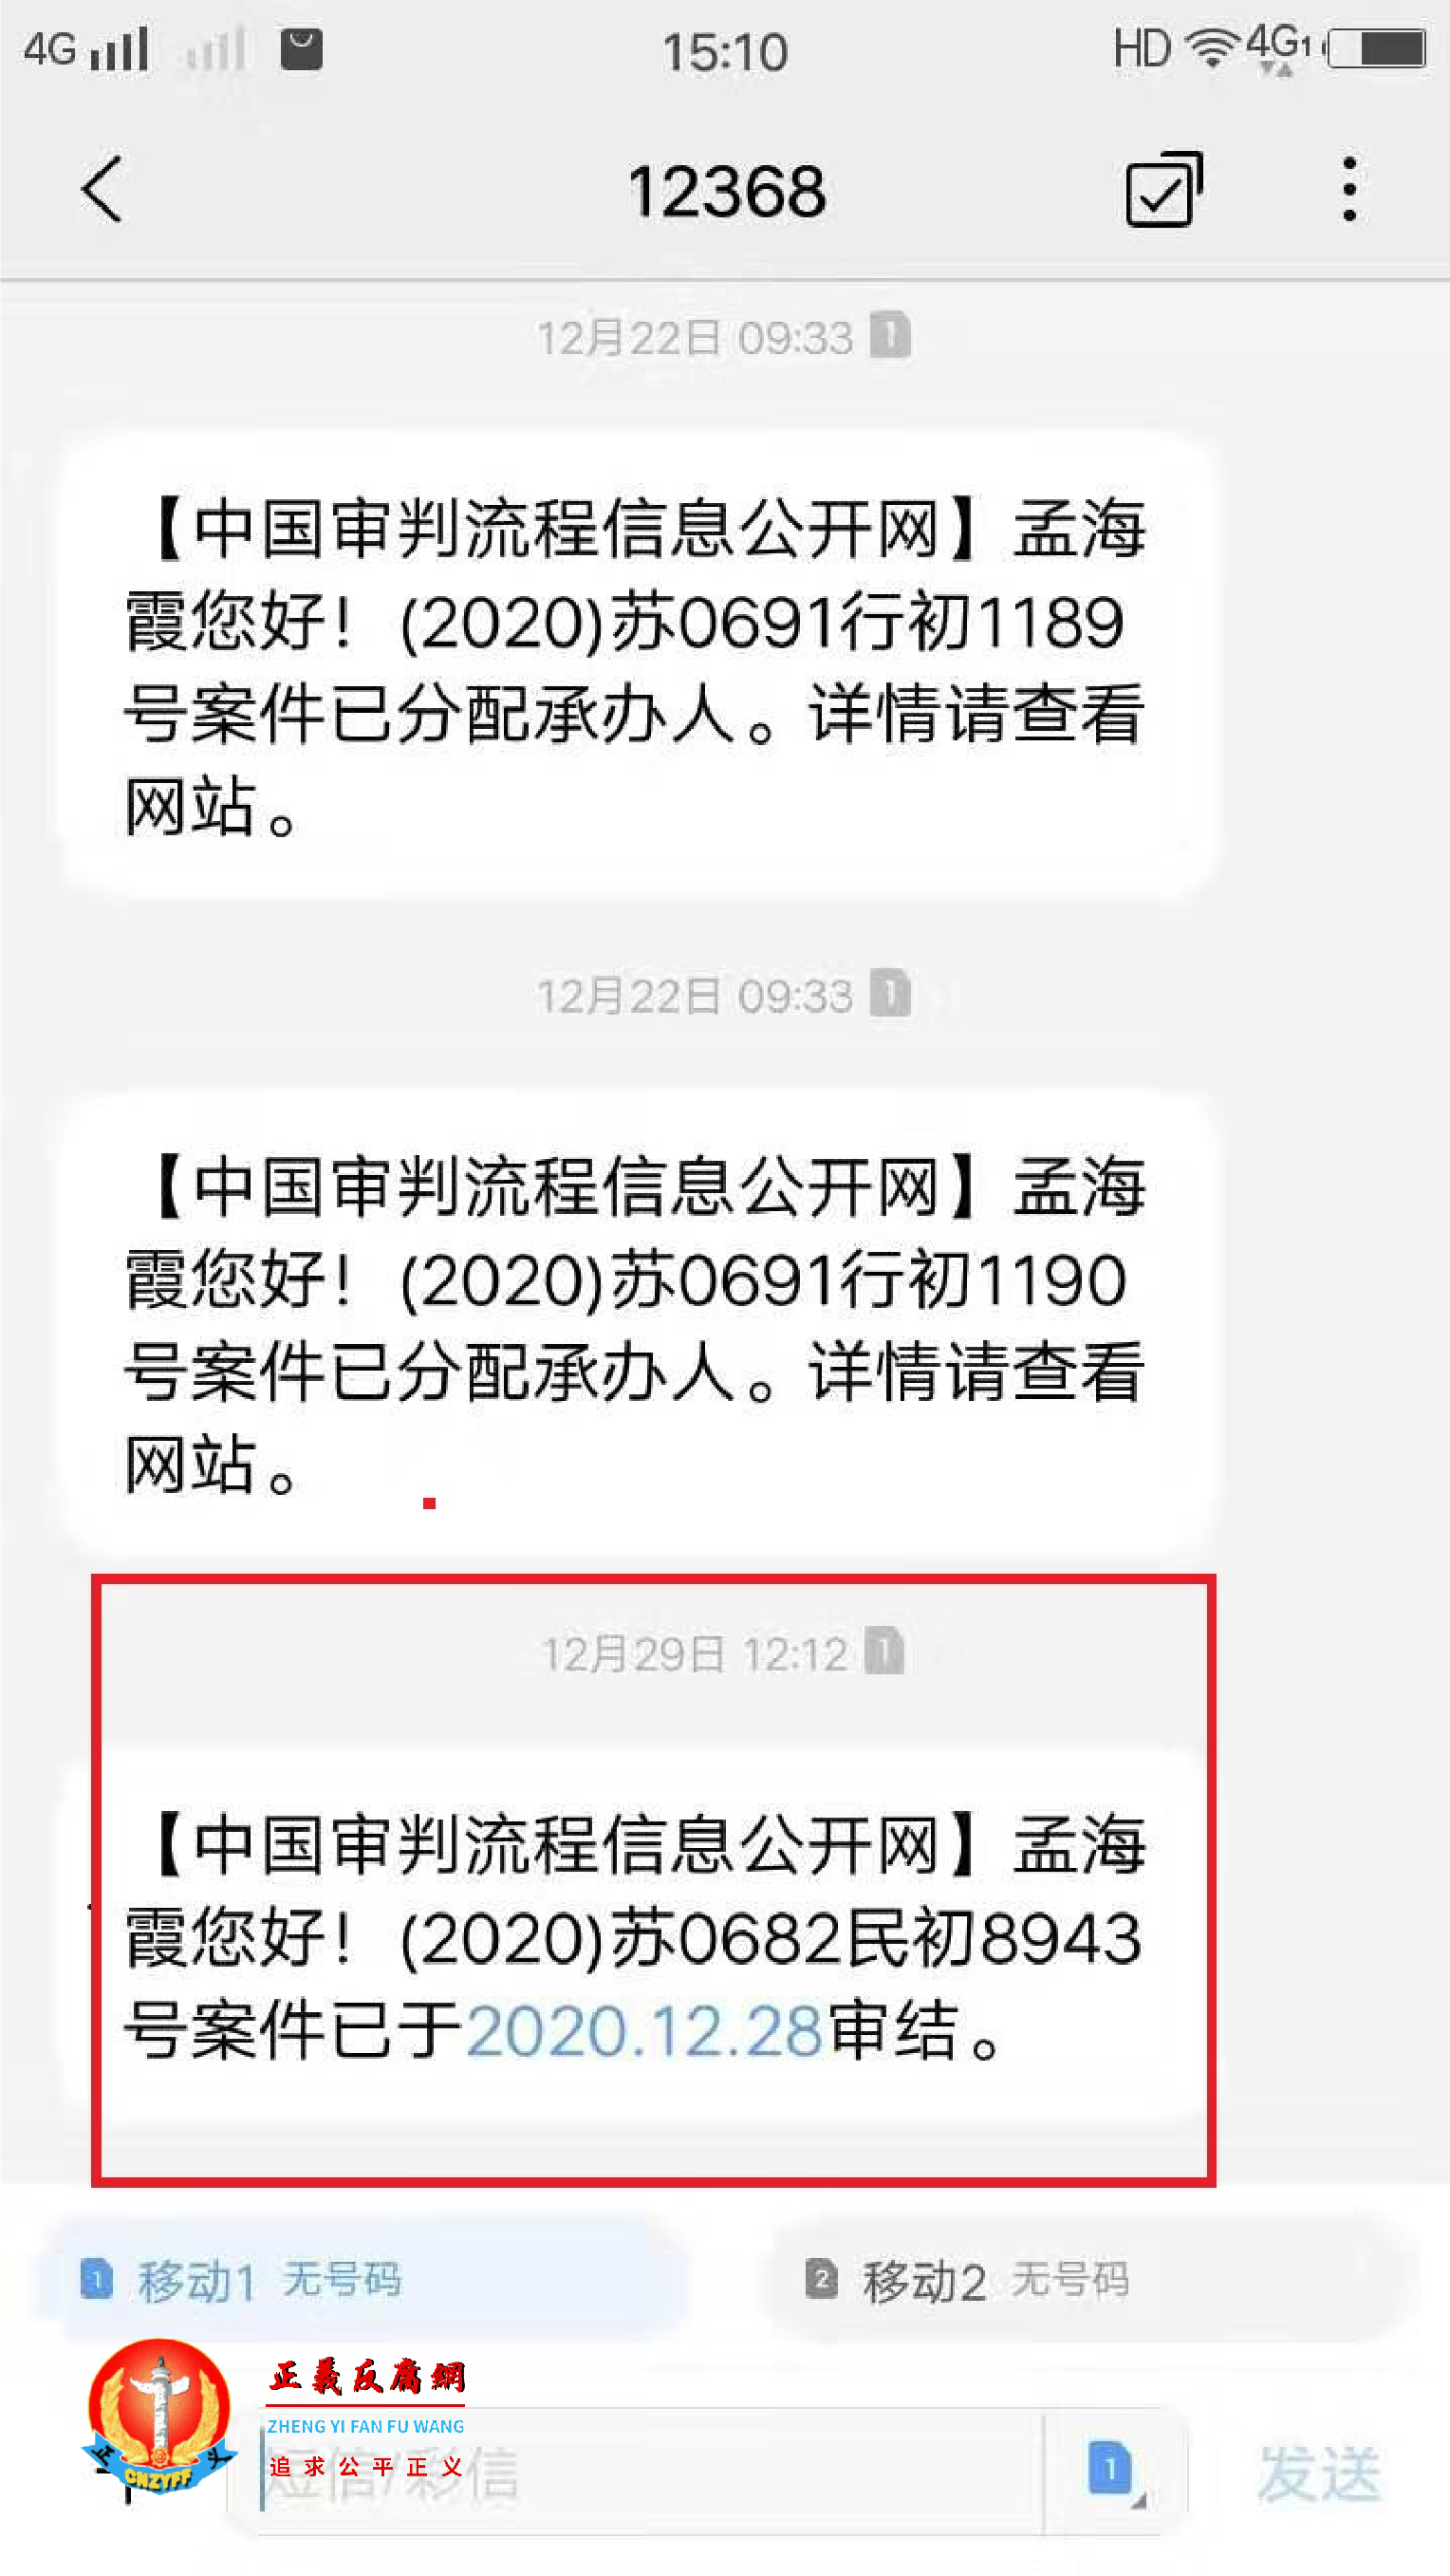 中国审判流程信息公开网的短信。.png